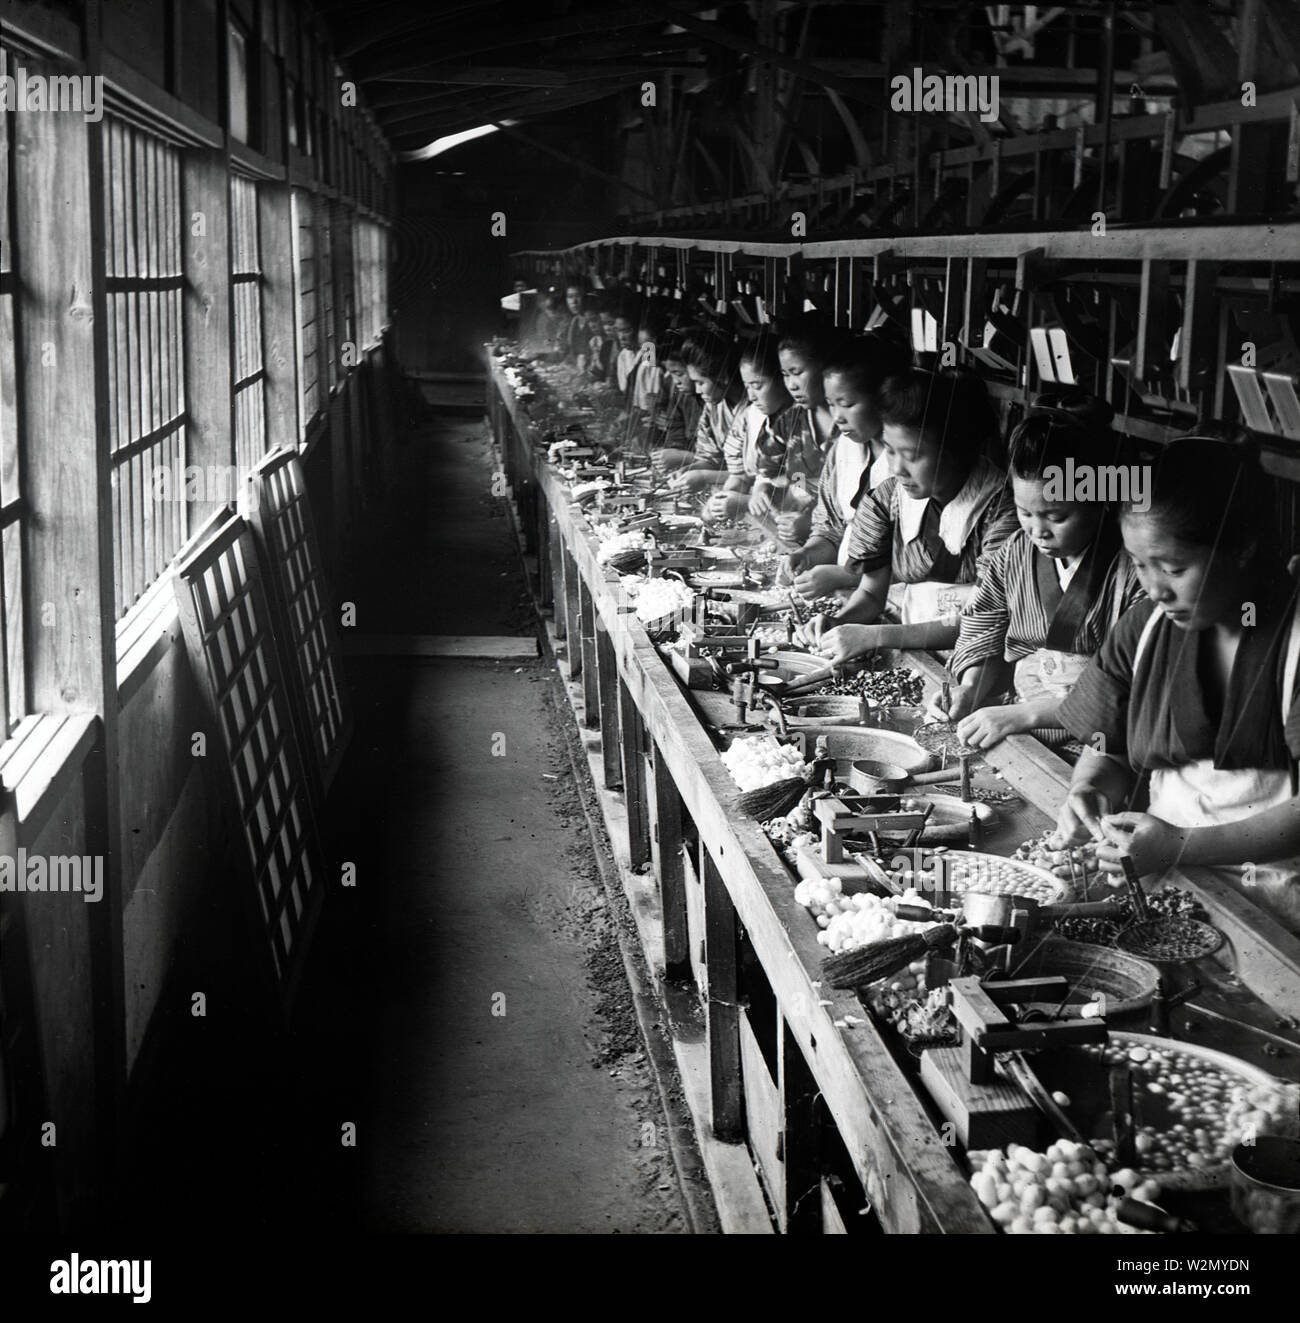 [1900s Japan - Japanische Frauen Reeling Silk] - Kochen Kokons und reeling Silk bei einer seidenfabrik. 20. Jahrhundert vintage Glas schieben. Stockfoto